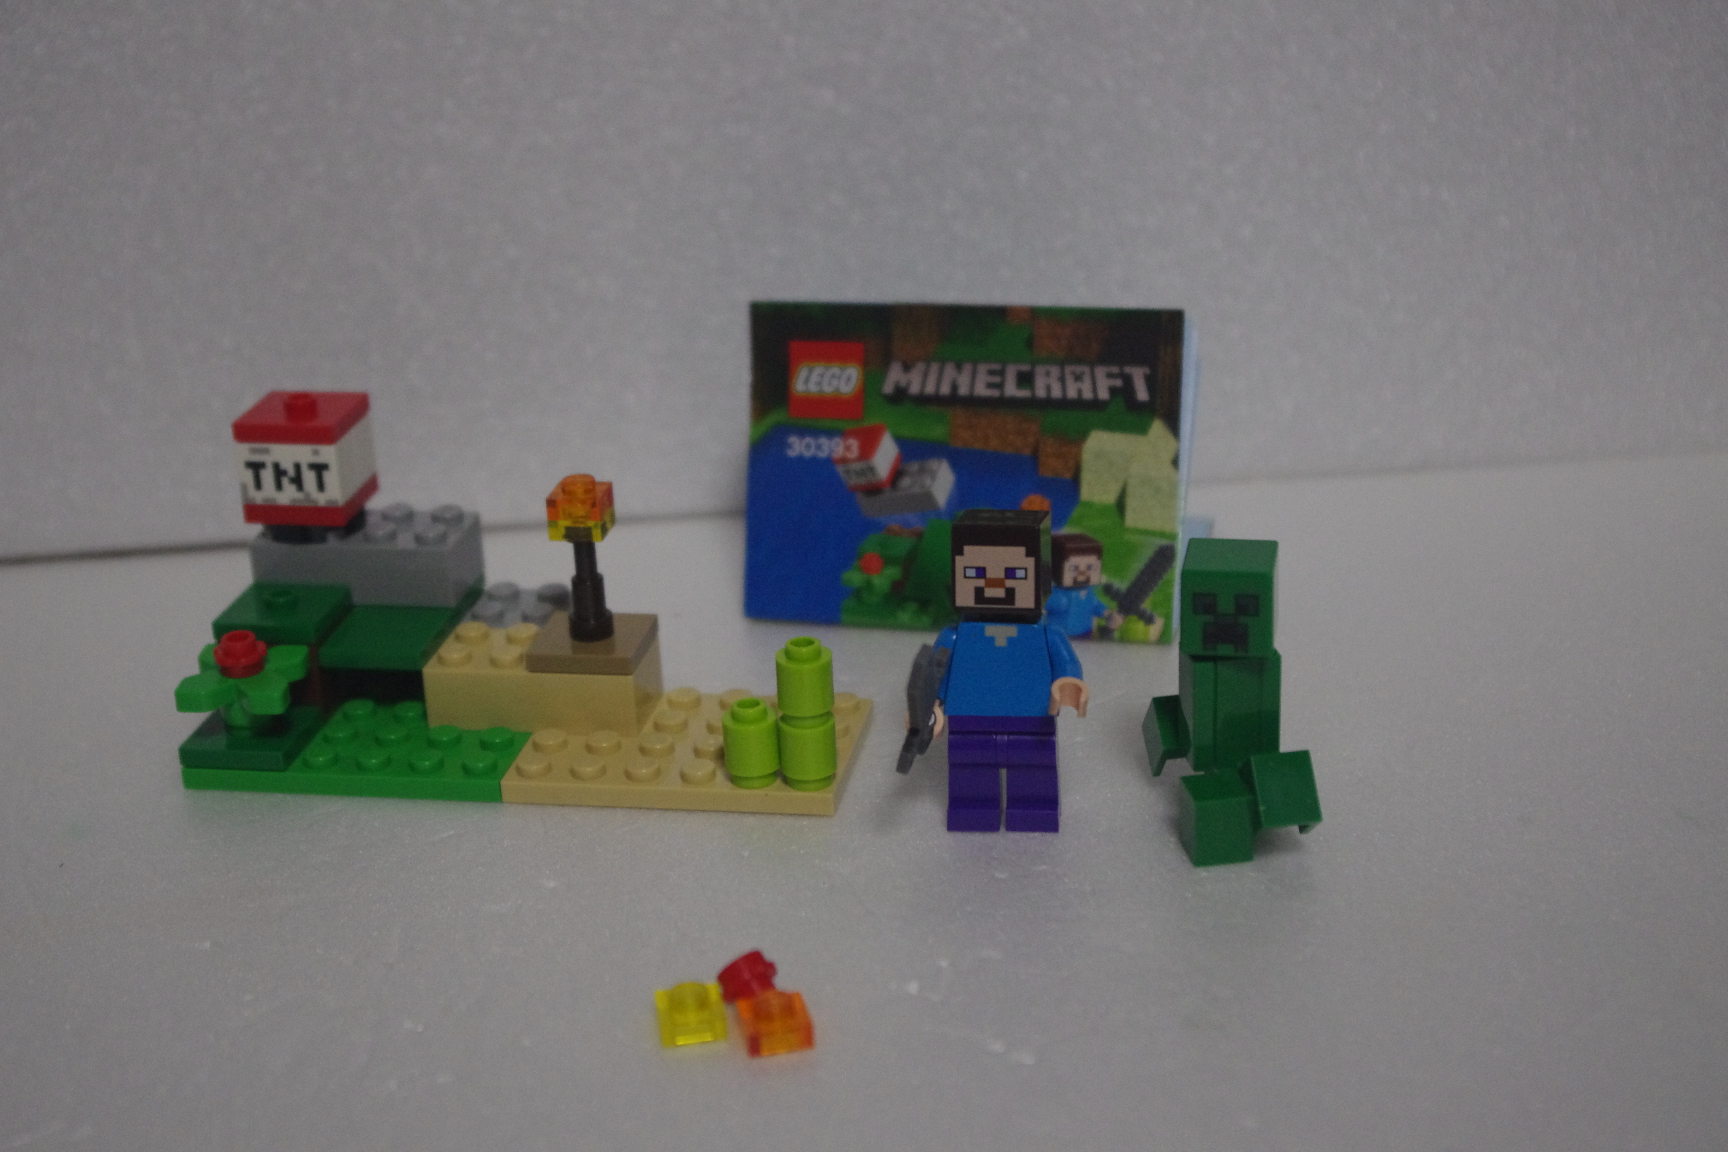 レゴマインクラフトミニセット 30393 Legoとかなんでも手を出す 楽天ブログ